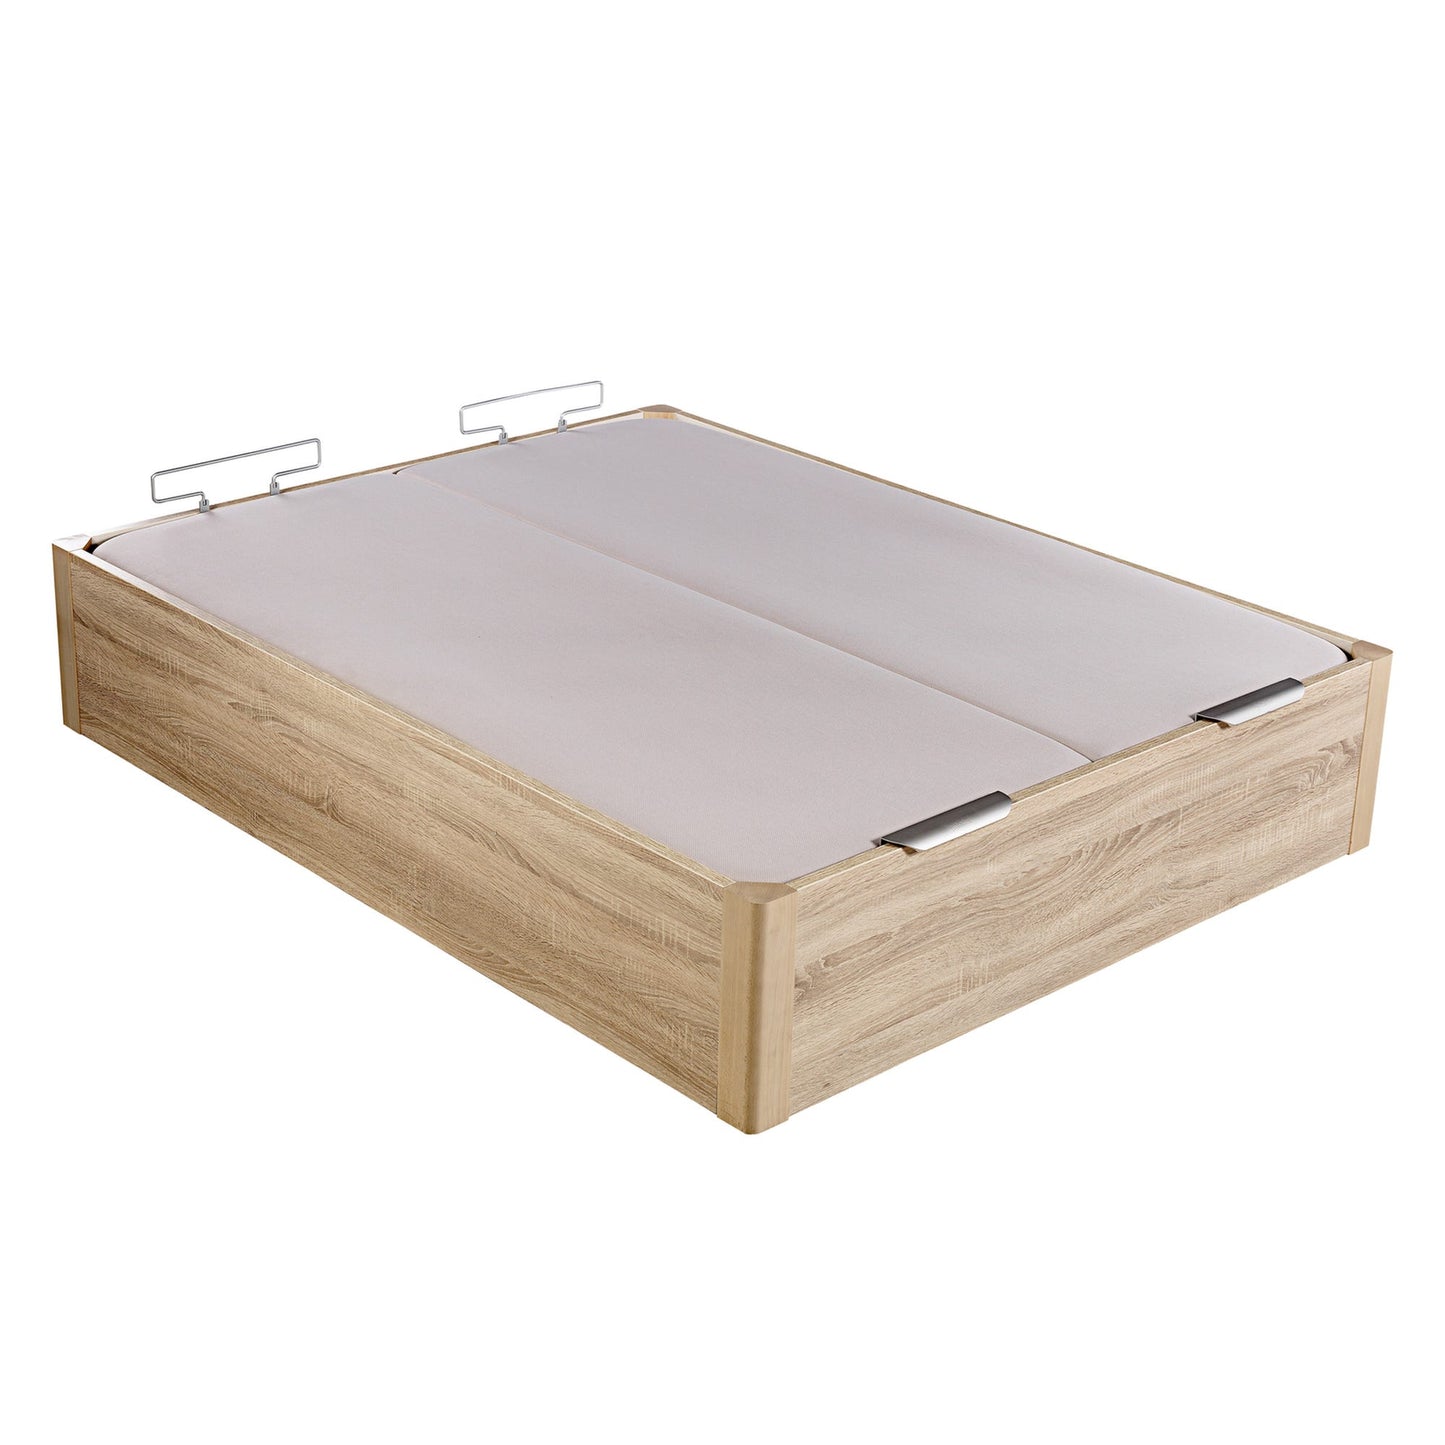 Canapé abatible de madera de alta capacidad tapa doble de color natural - DESIGN - 150x182